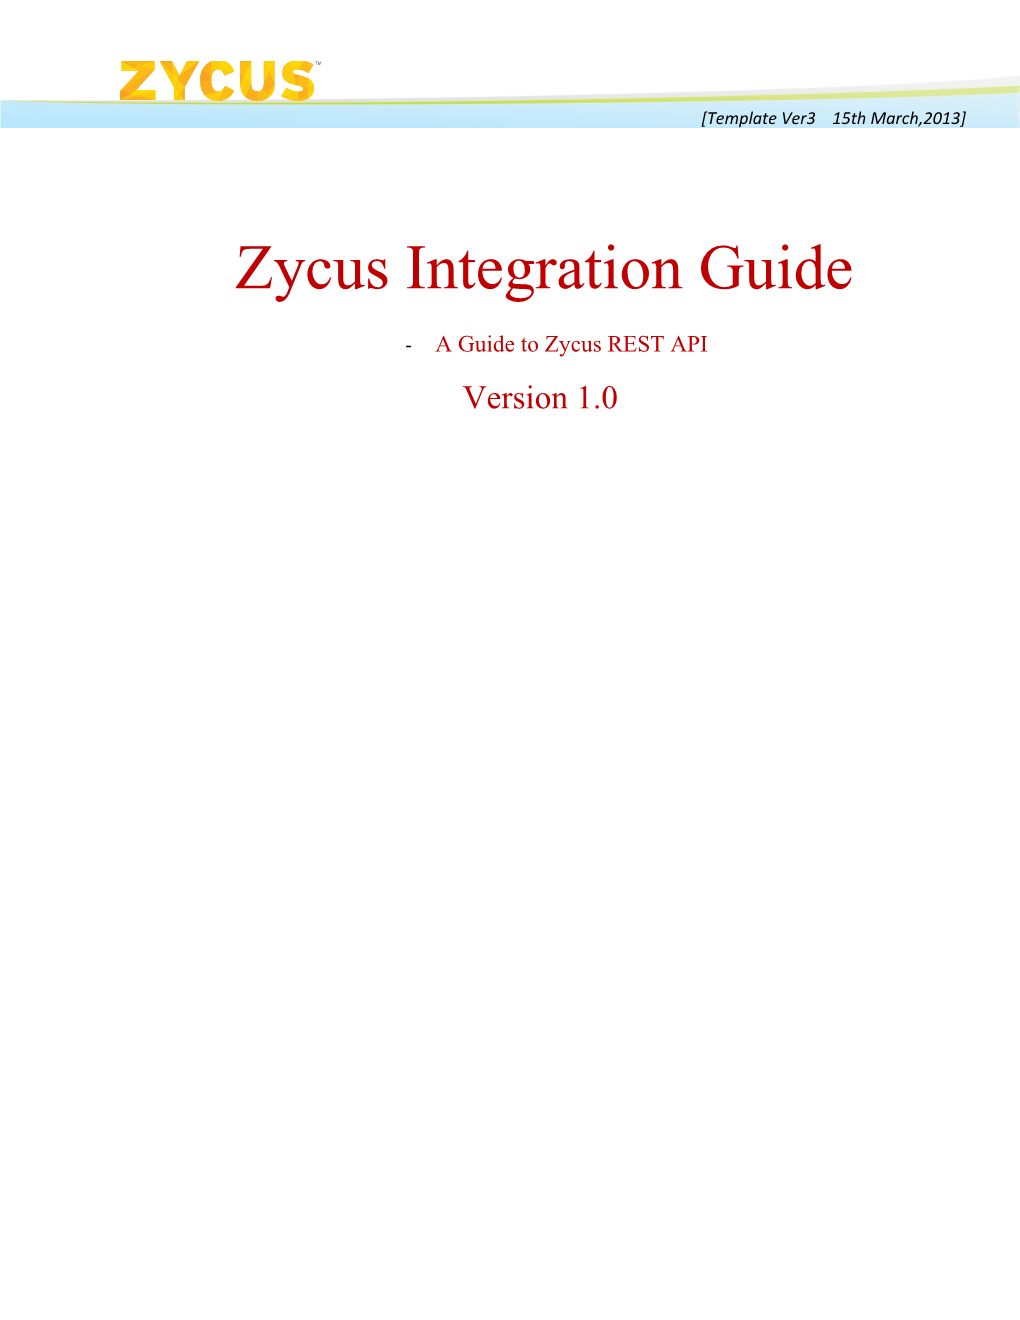 A Guide Tozycus REST API